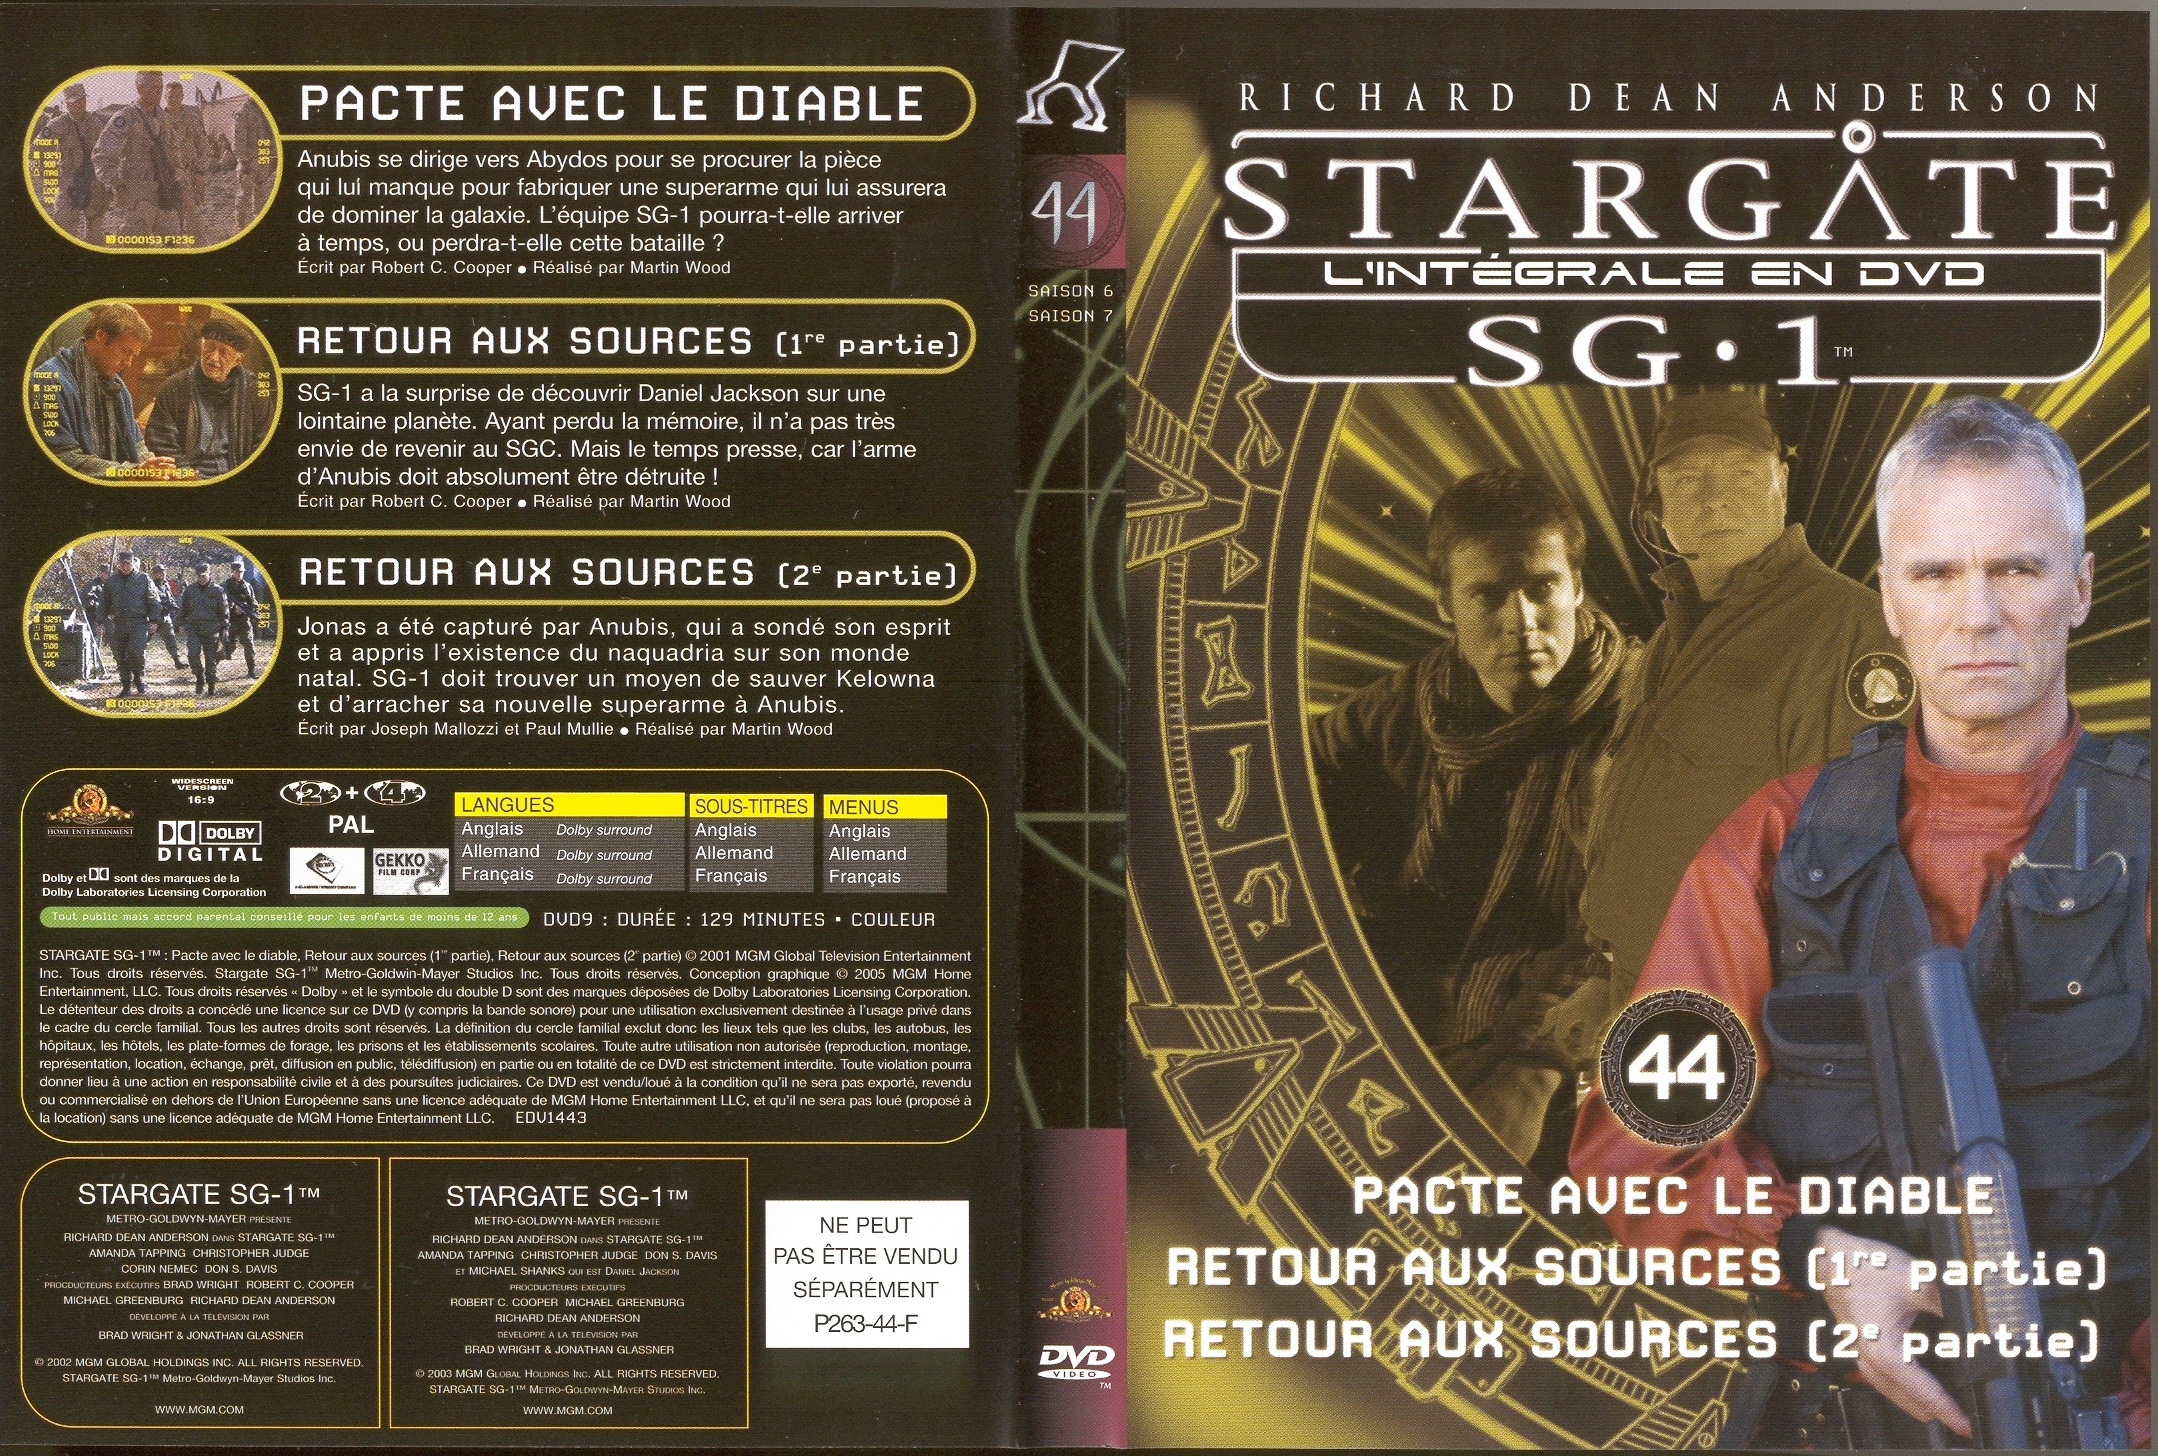 Jaquette DVD Stargate saison 6 et 7 vol 44